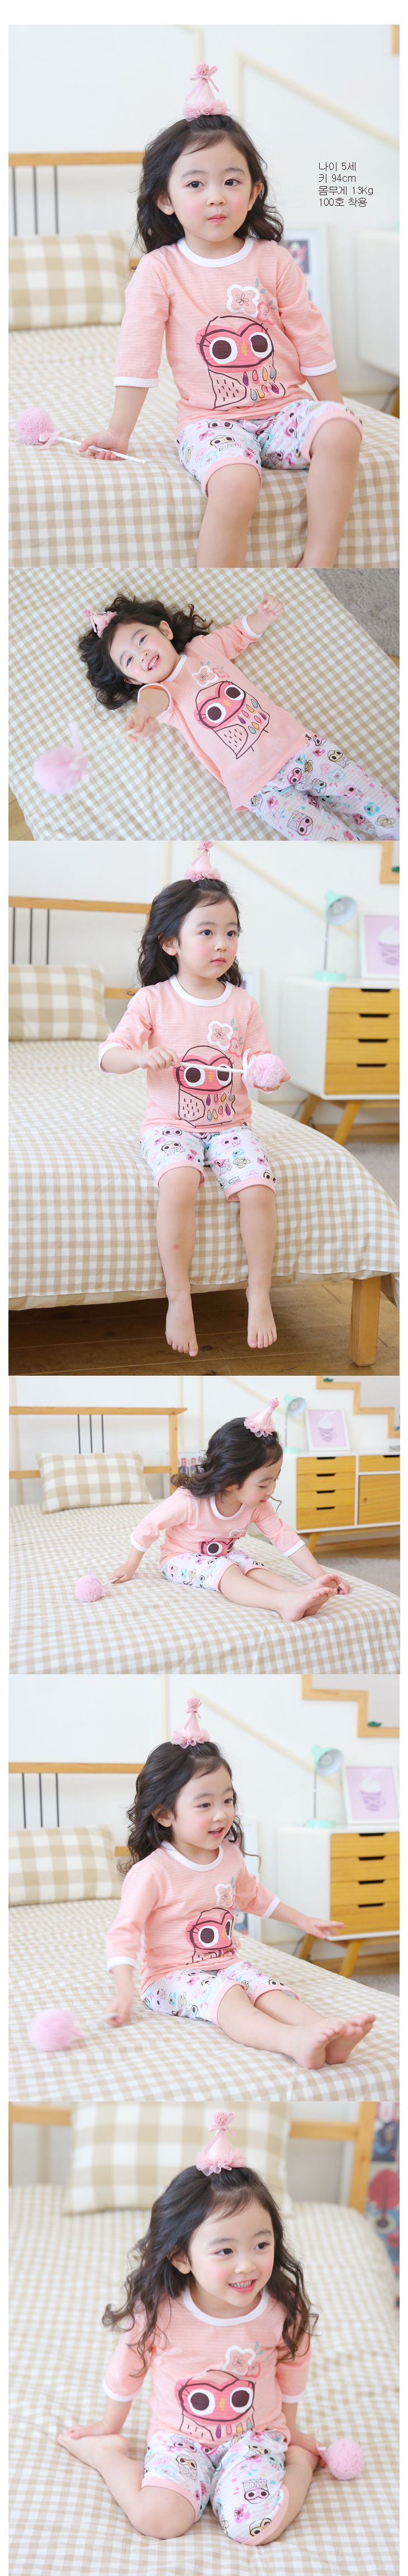 韓國製七分袖家居服套裝組-PUCO(彩繪貓頭鷹)粉